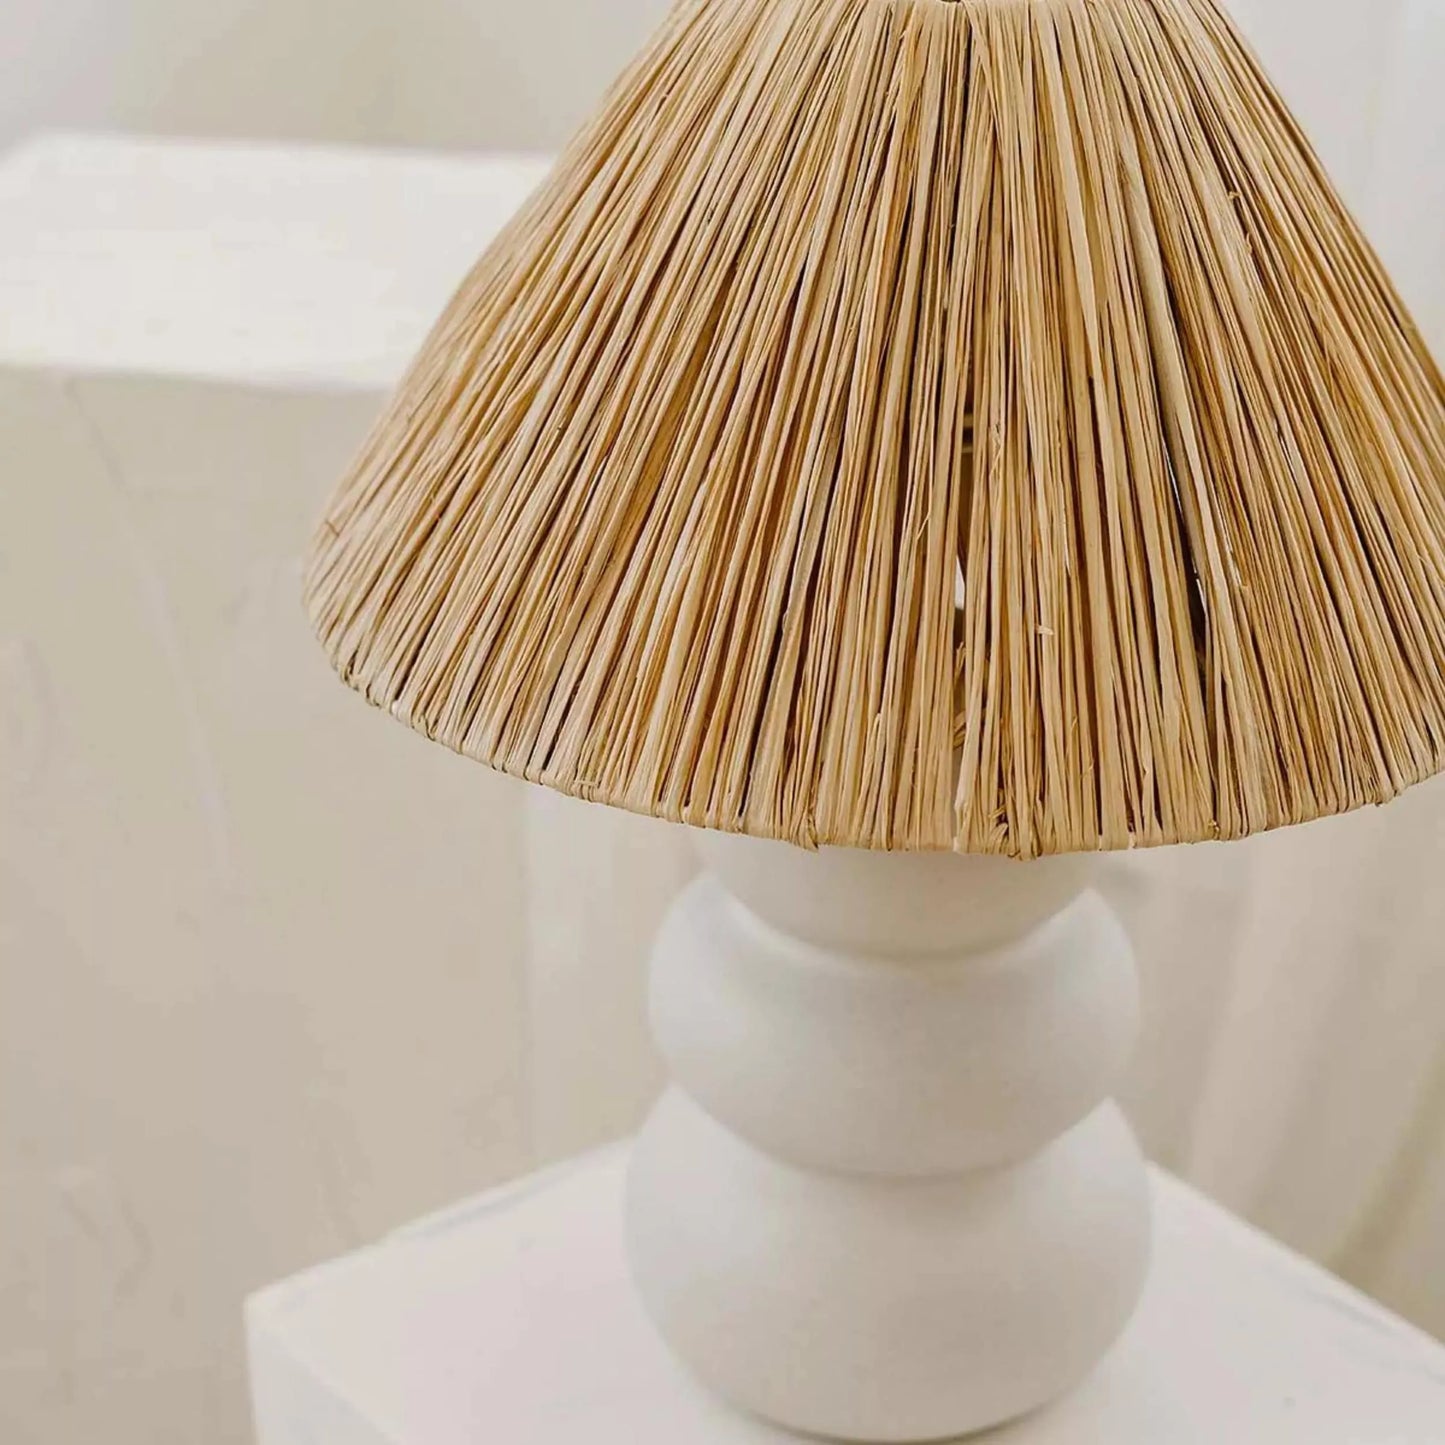 Soffia Raffia Table Lamp - Natural